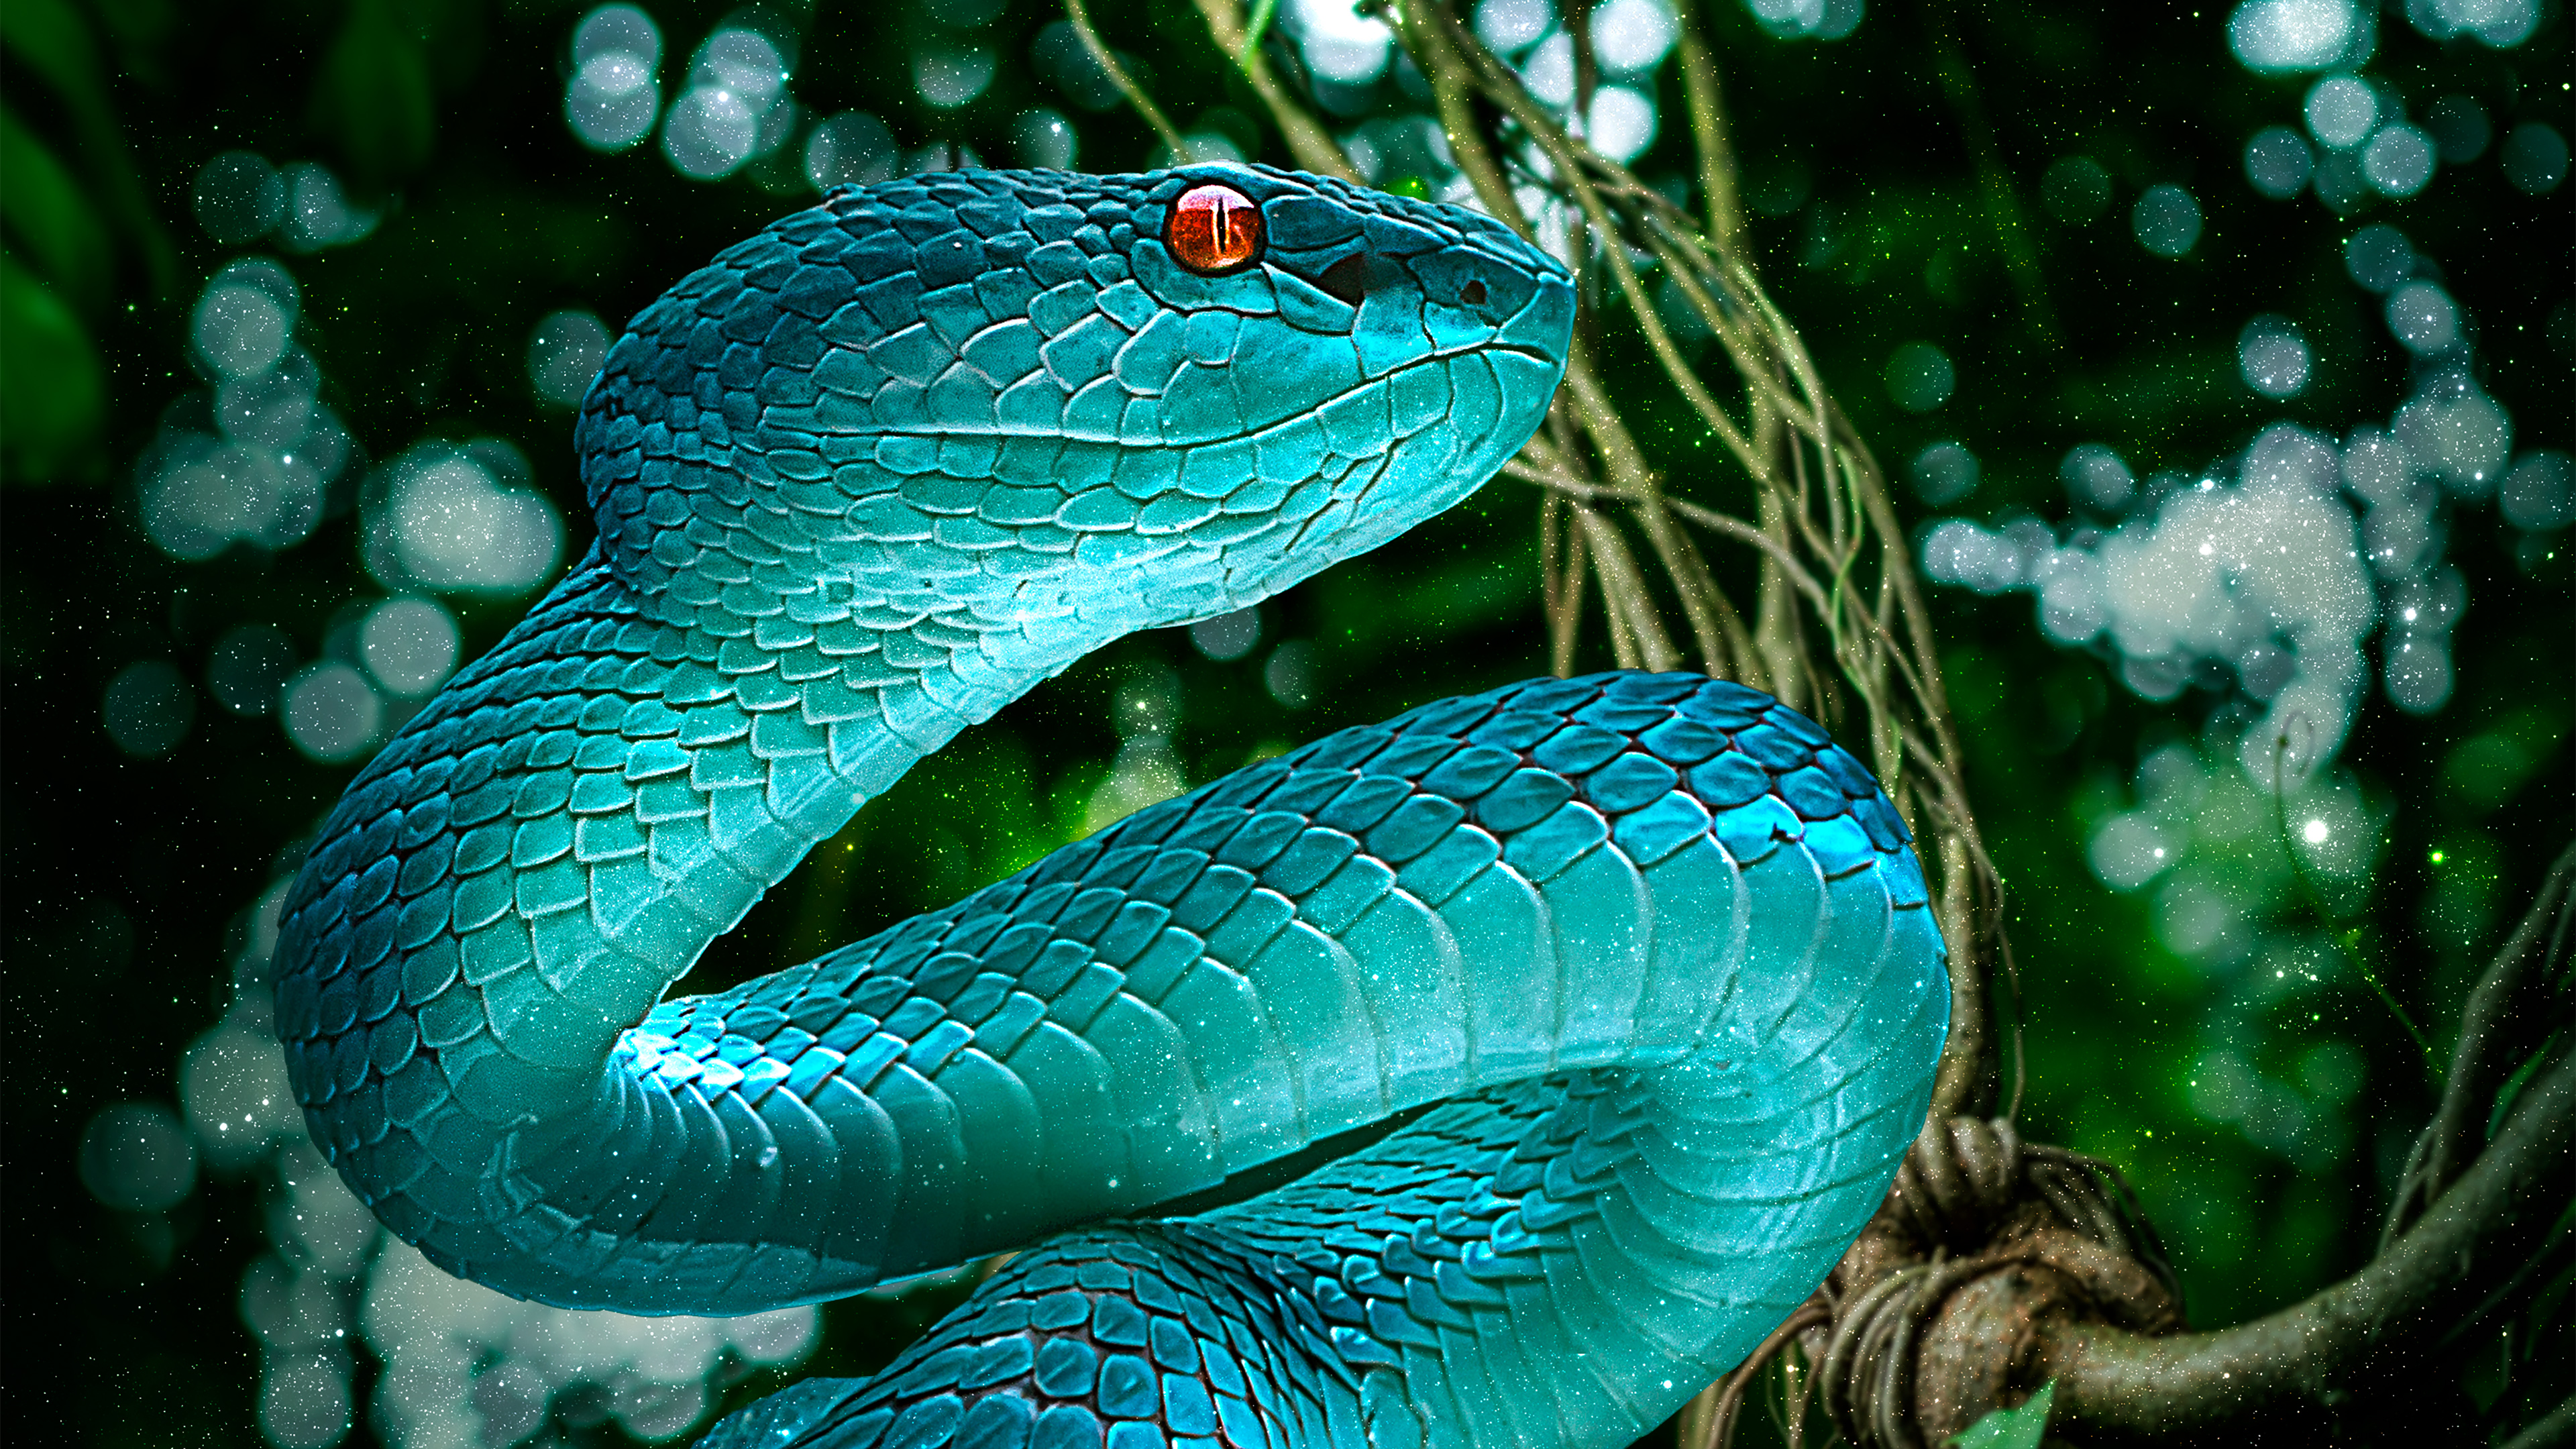 Descarga gratuita de fondo de pantalla para móvil de Animales, Serpiente, Reptiles, Víbora.